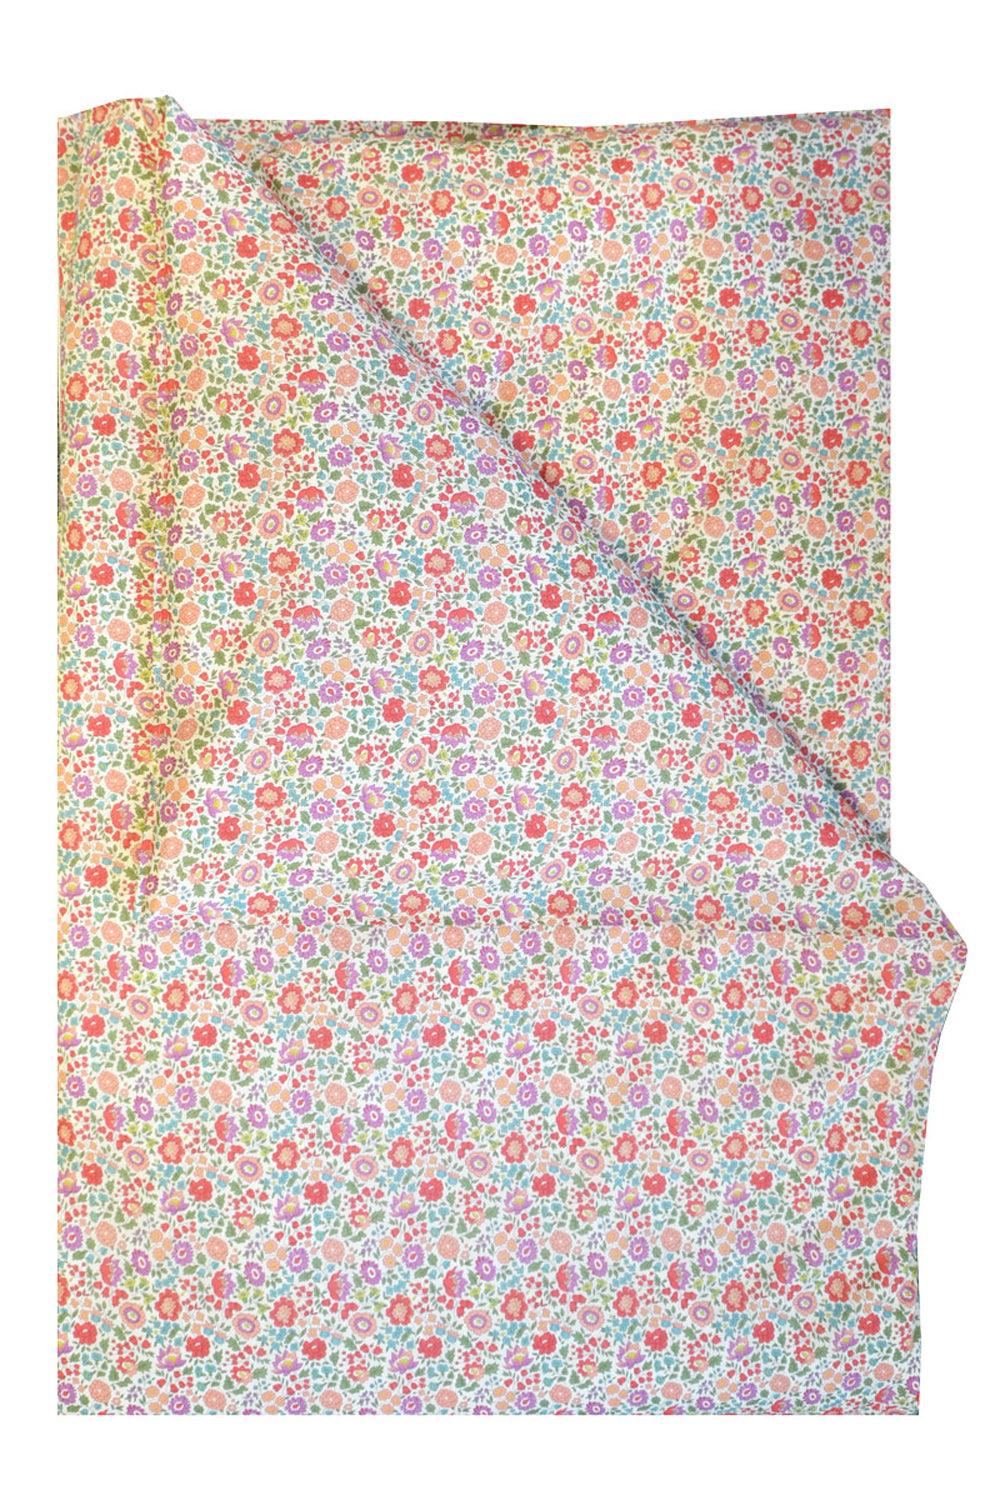 Vintage Floral Bedspread 210X210CM PRE SALE